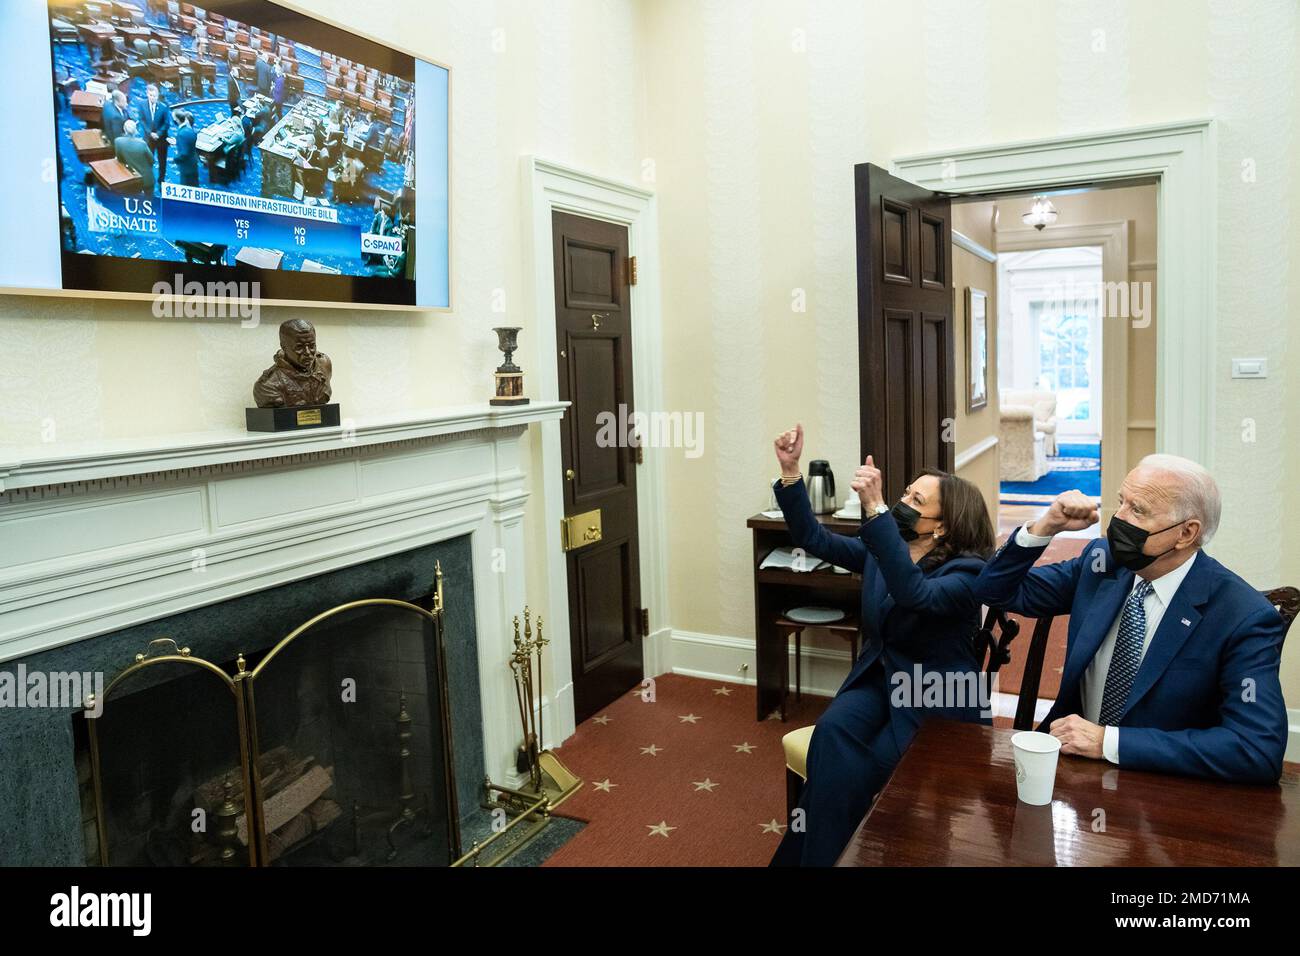 Bericht: Präsident Joe Biden und Vizepräsidentin Kamala Harris sehen sich die "Ja"-Stimme von 51 in den USA an Senat für das $1,2 Billionen Dollar große, parteiübergreifende Infrastrukturgesetz, Dienstag, 10. August 2021, im Oval Office Dining Room des Weißen Hauses. Stockfoto